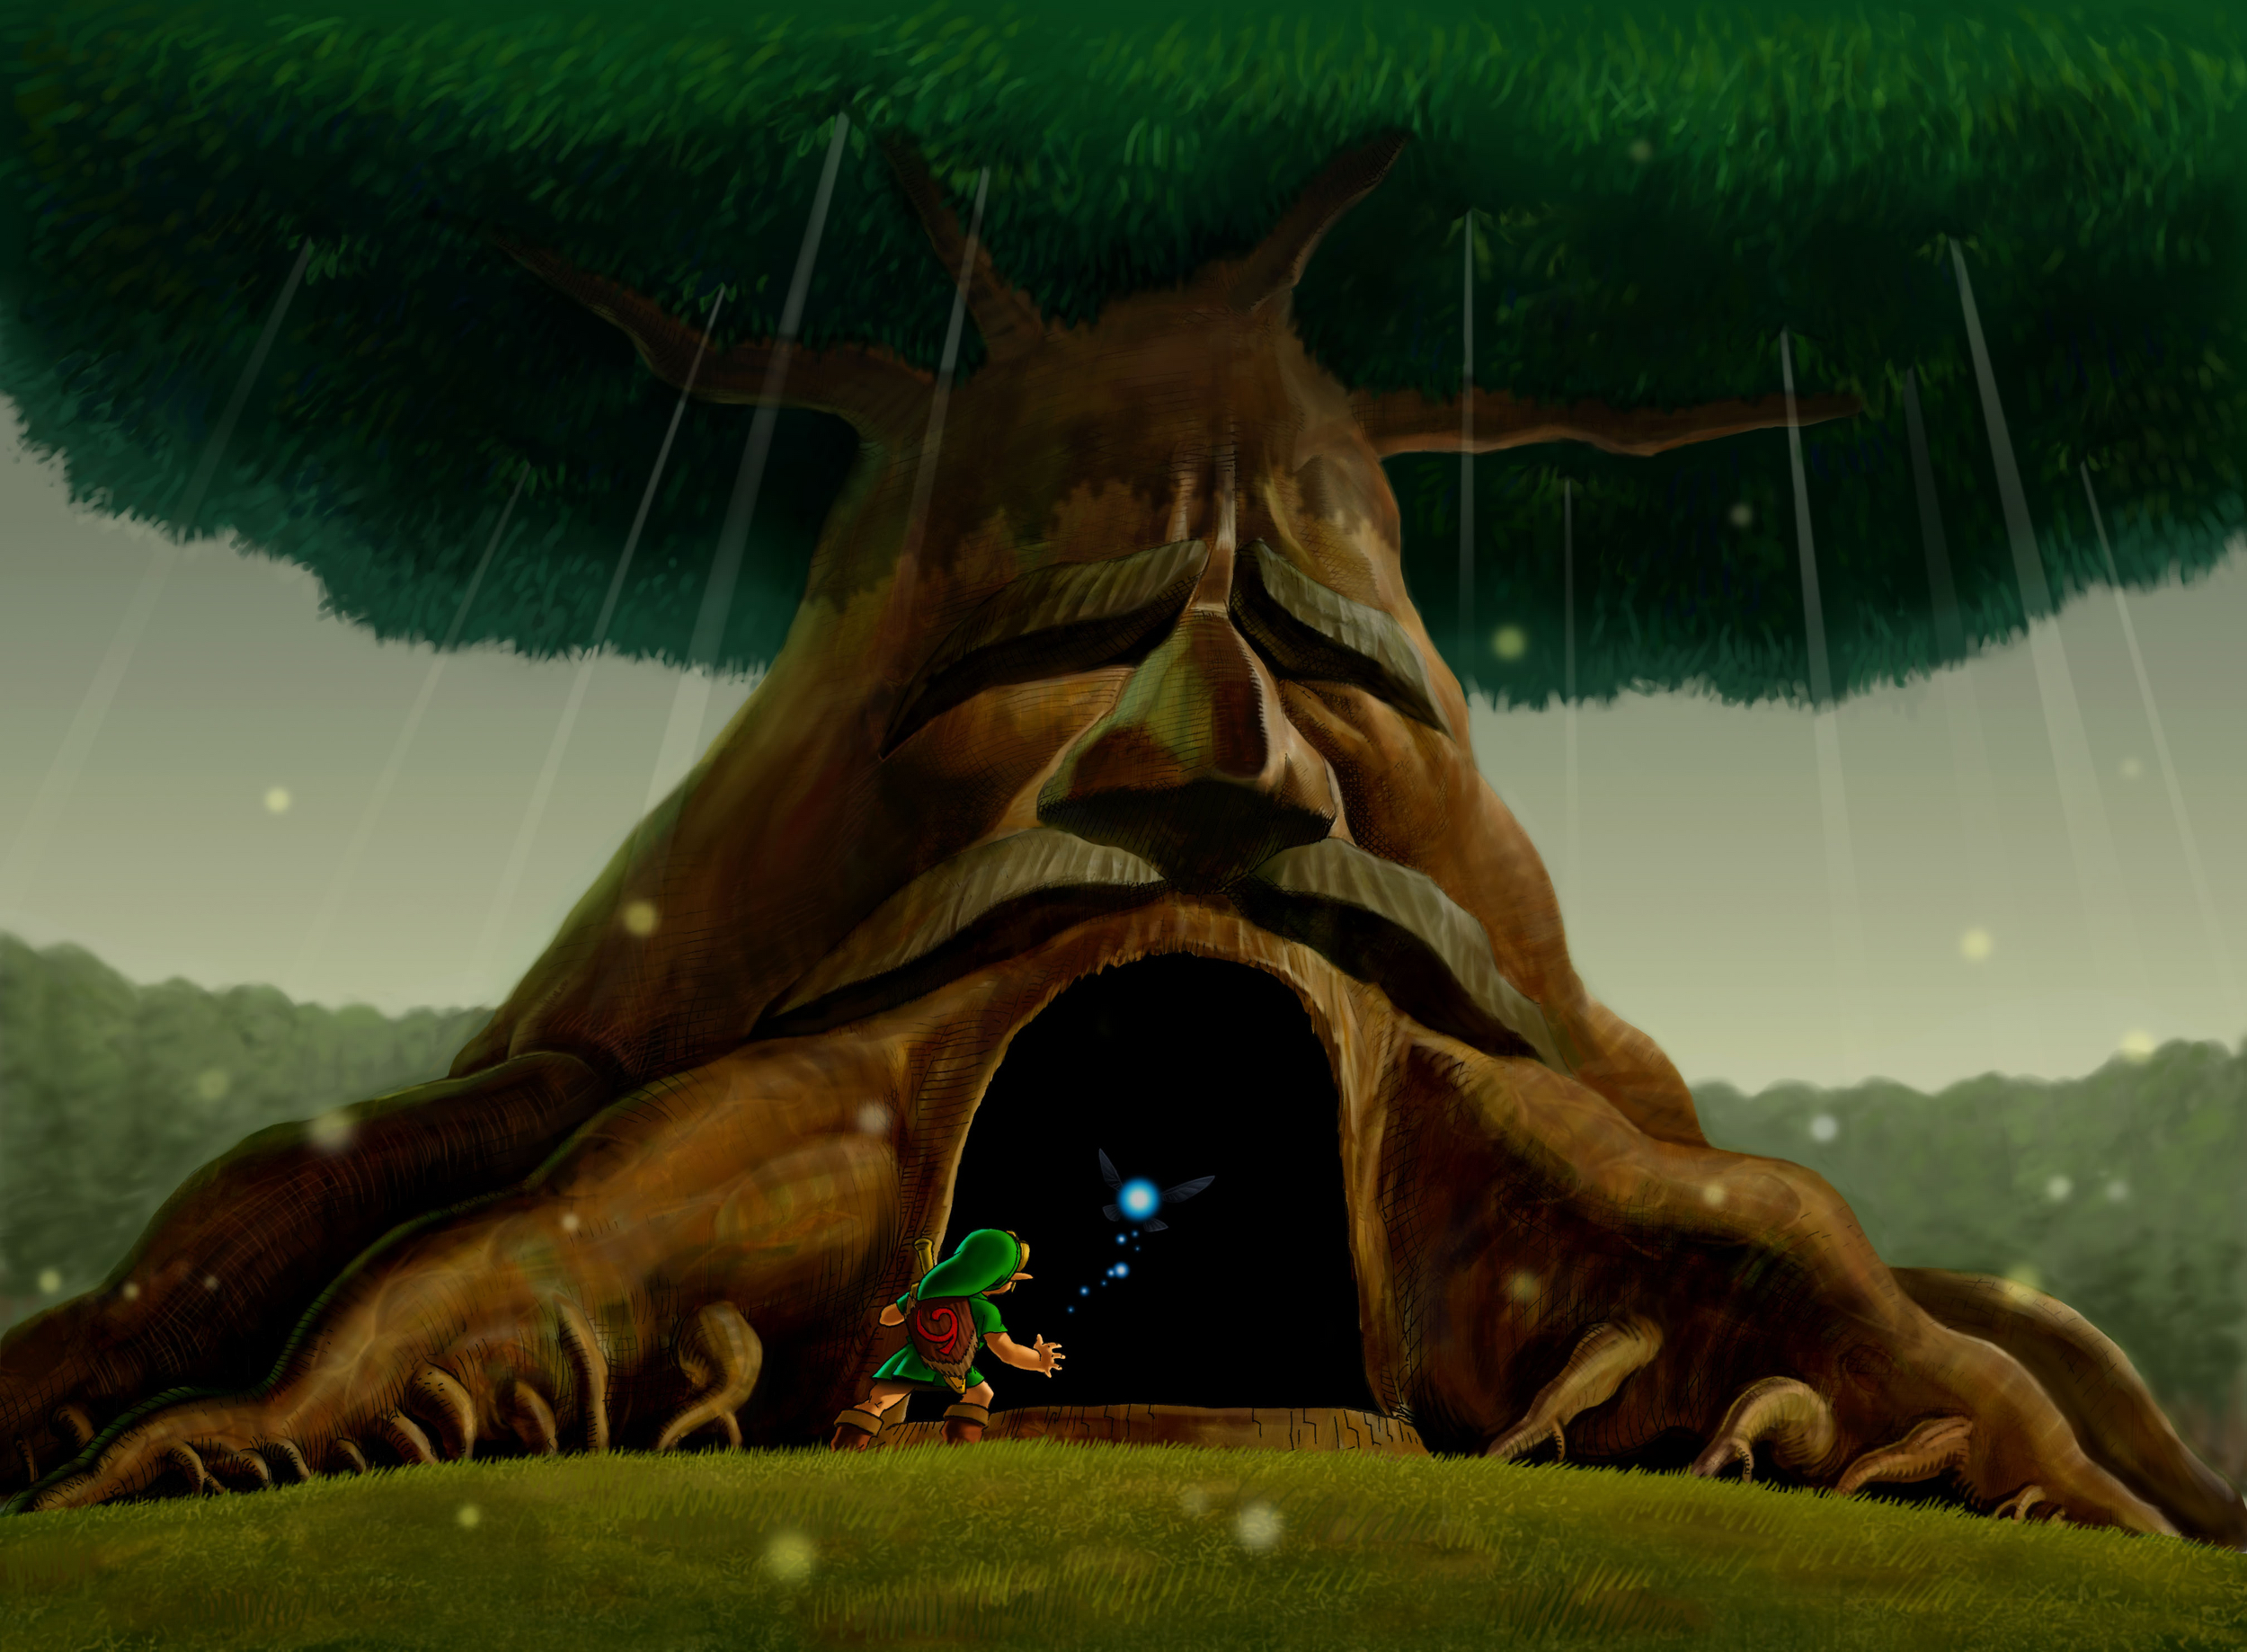 The Legend of Zelda: Ocarina of Time Master Quest - Zelda Dungeon Wiki, a  The Legend of Zelda wiki